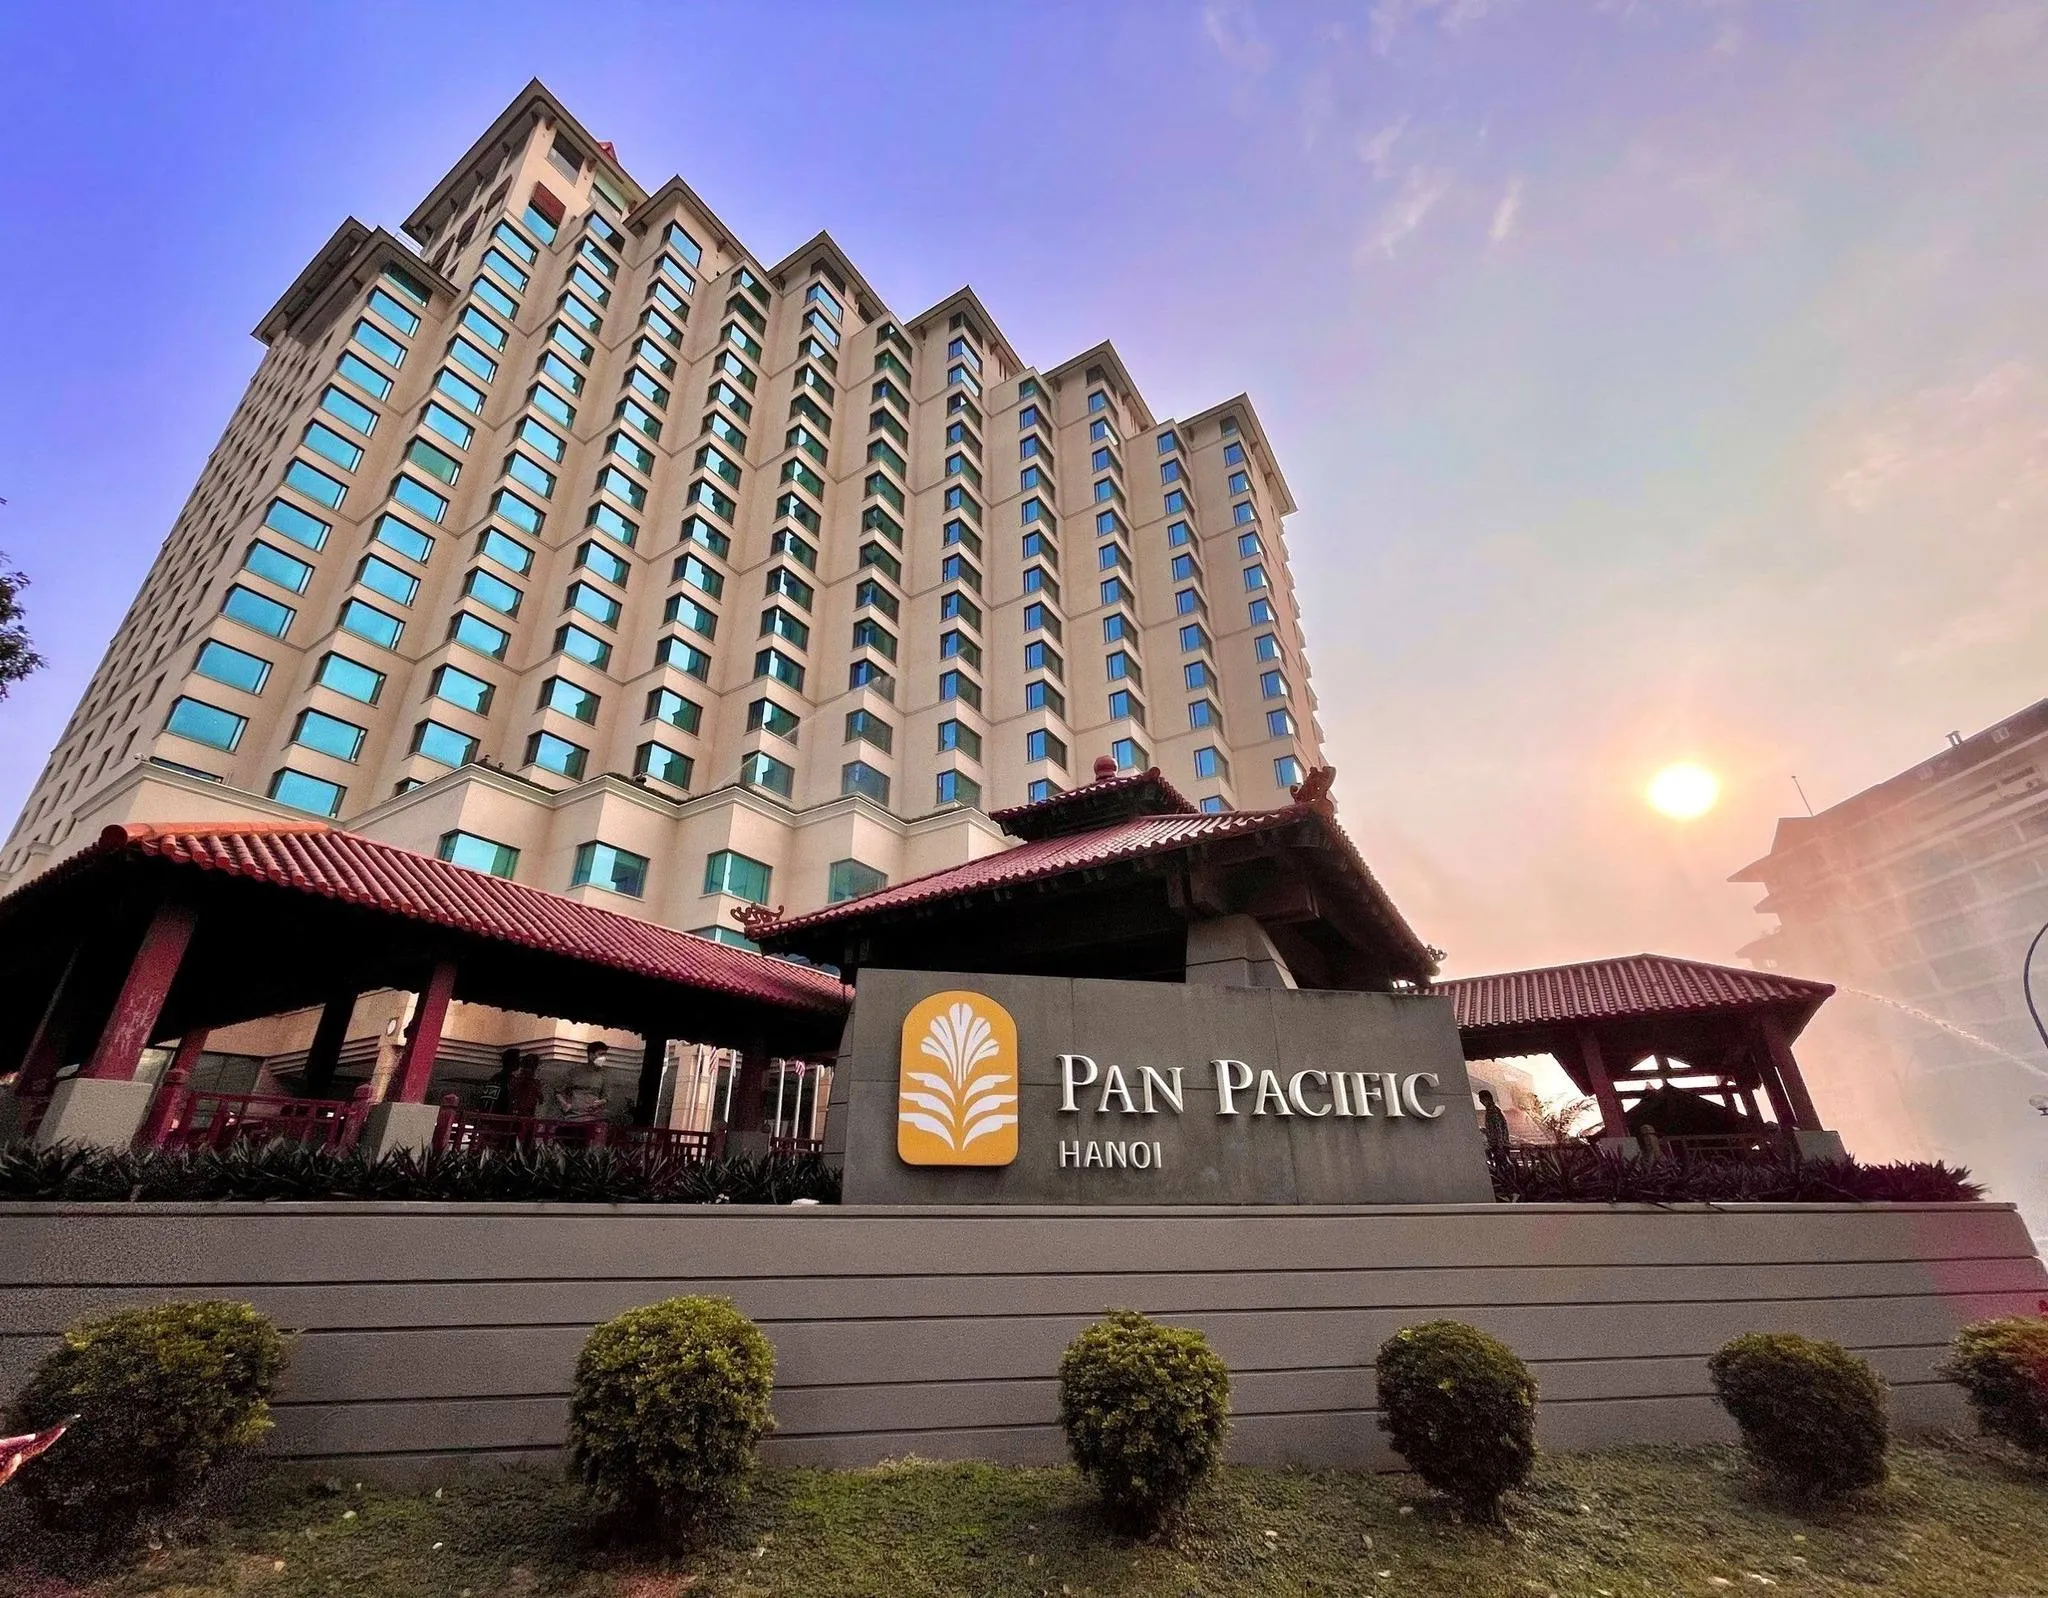 Khách sạn Pan Pacific Ha Noi - Địa điểm tổ chức hội nghị tại Hà Nội